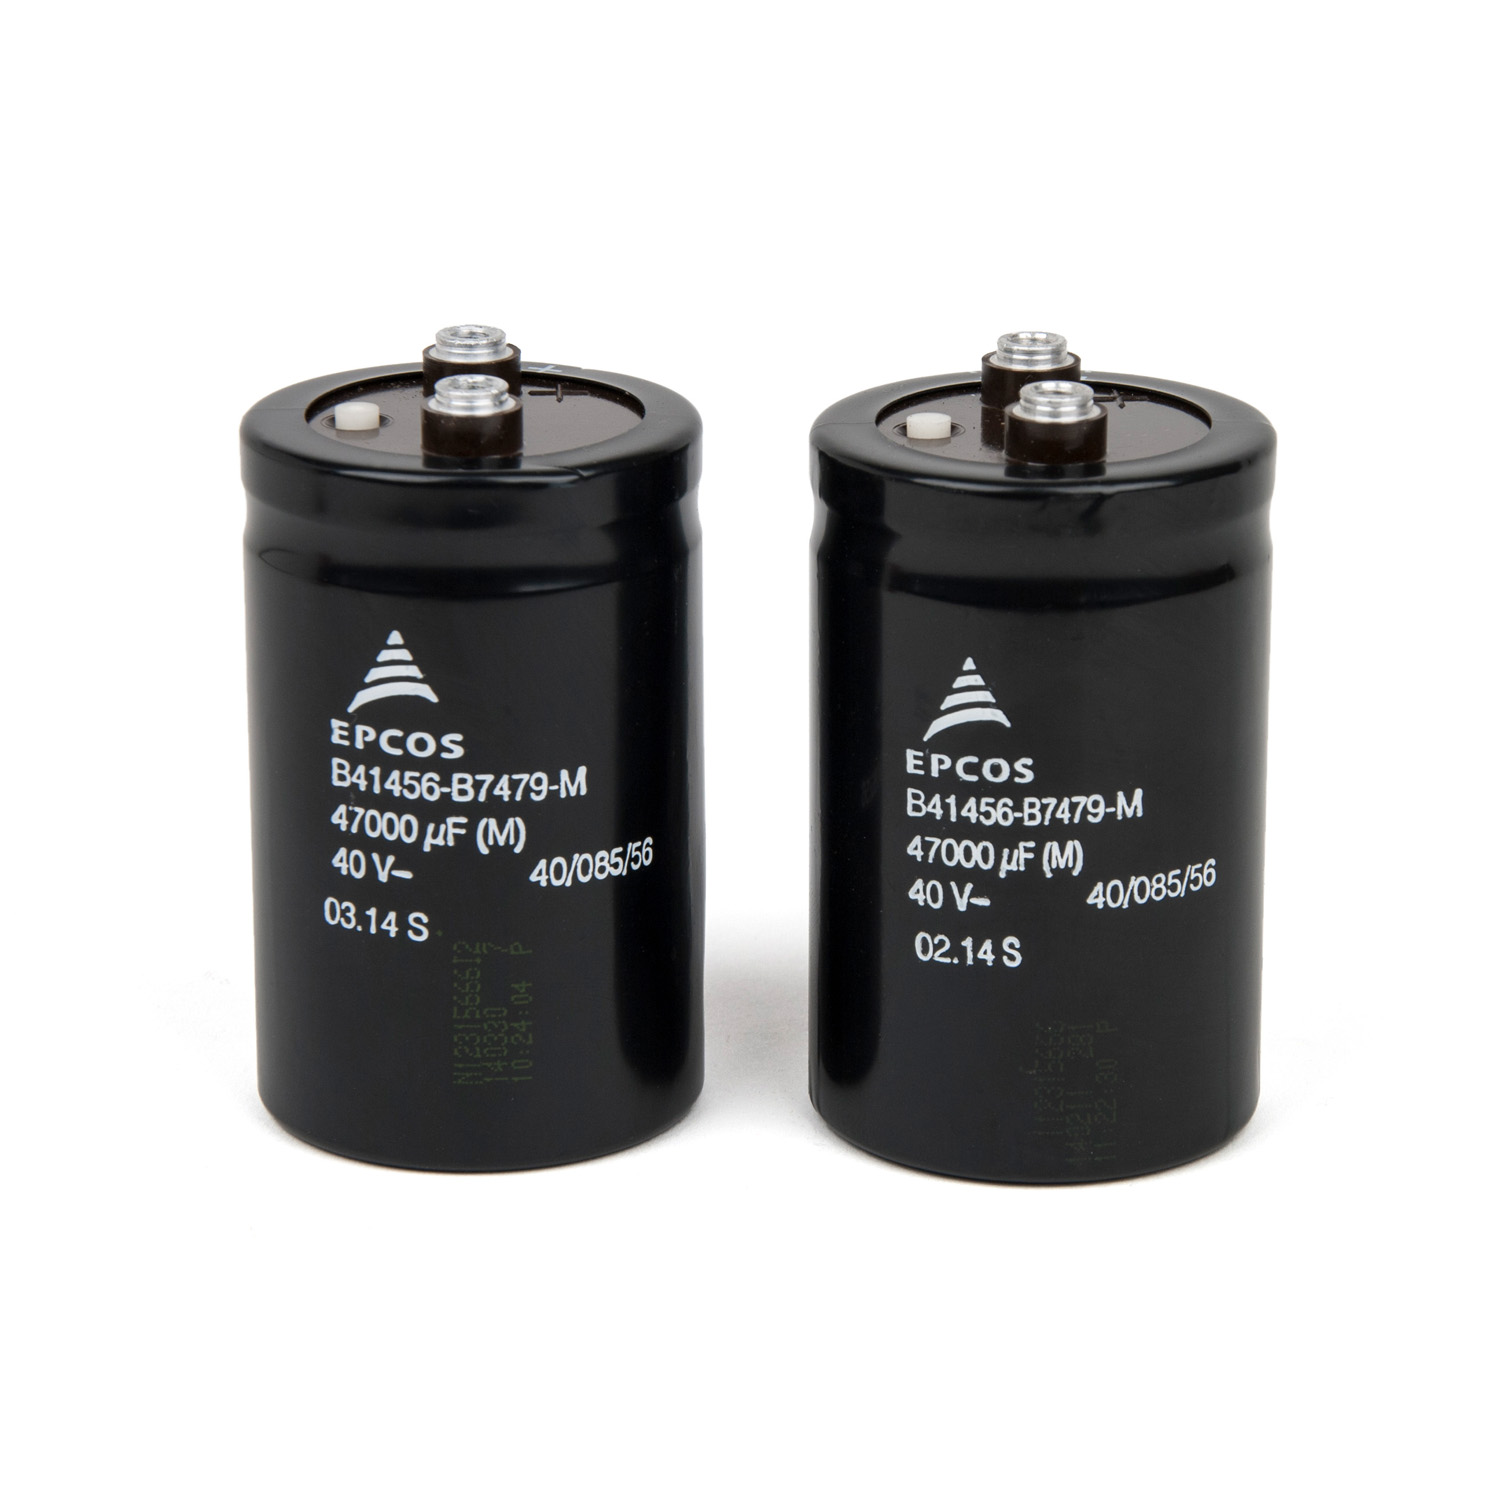 463-486 Charging capacitors C1-C4, set 2 pcs. 47000mF